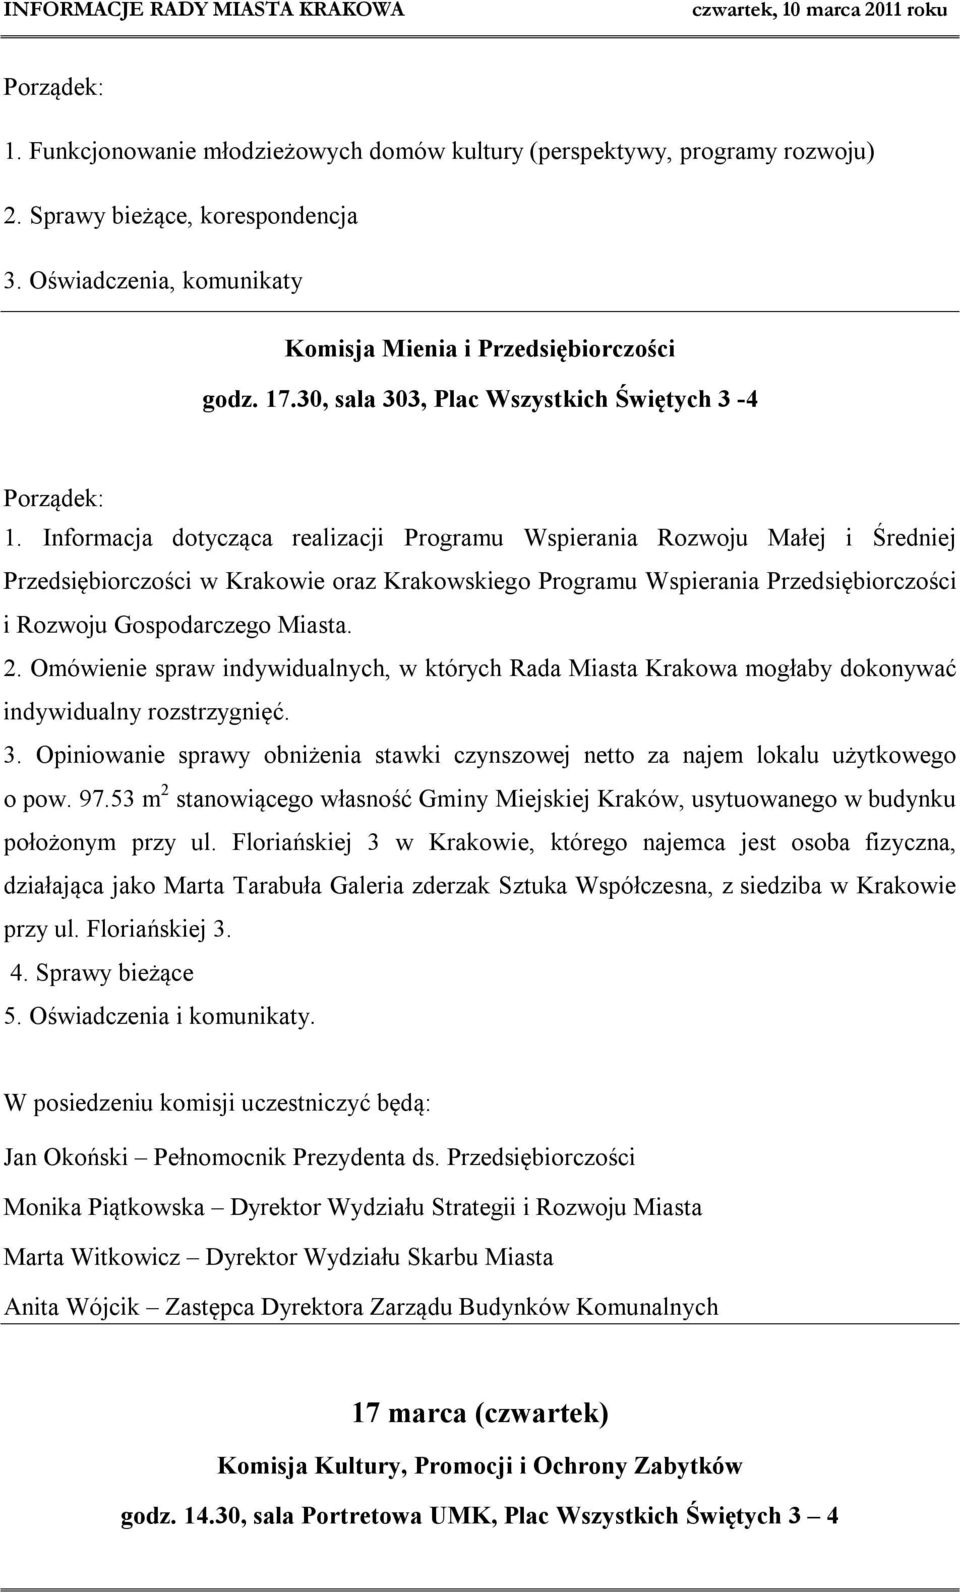 Informacja dotycząca realizacji Programu Wspierania Rozwoju Małej i Średniej Przedsiębiorczości w Krakowie oraz Krakowskiego Programu Wspierania Przedsiębiorczości i Rozwoju Gospodarczego Miasta. 2.